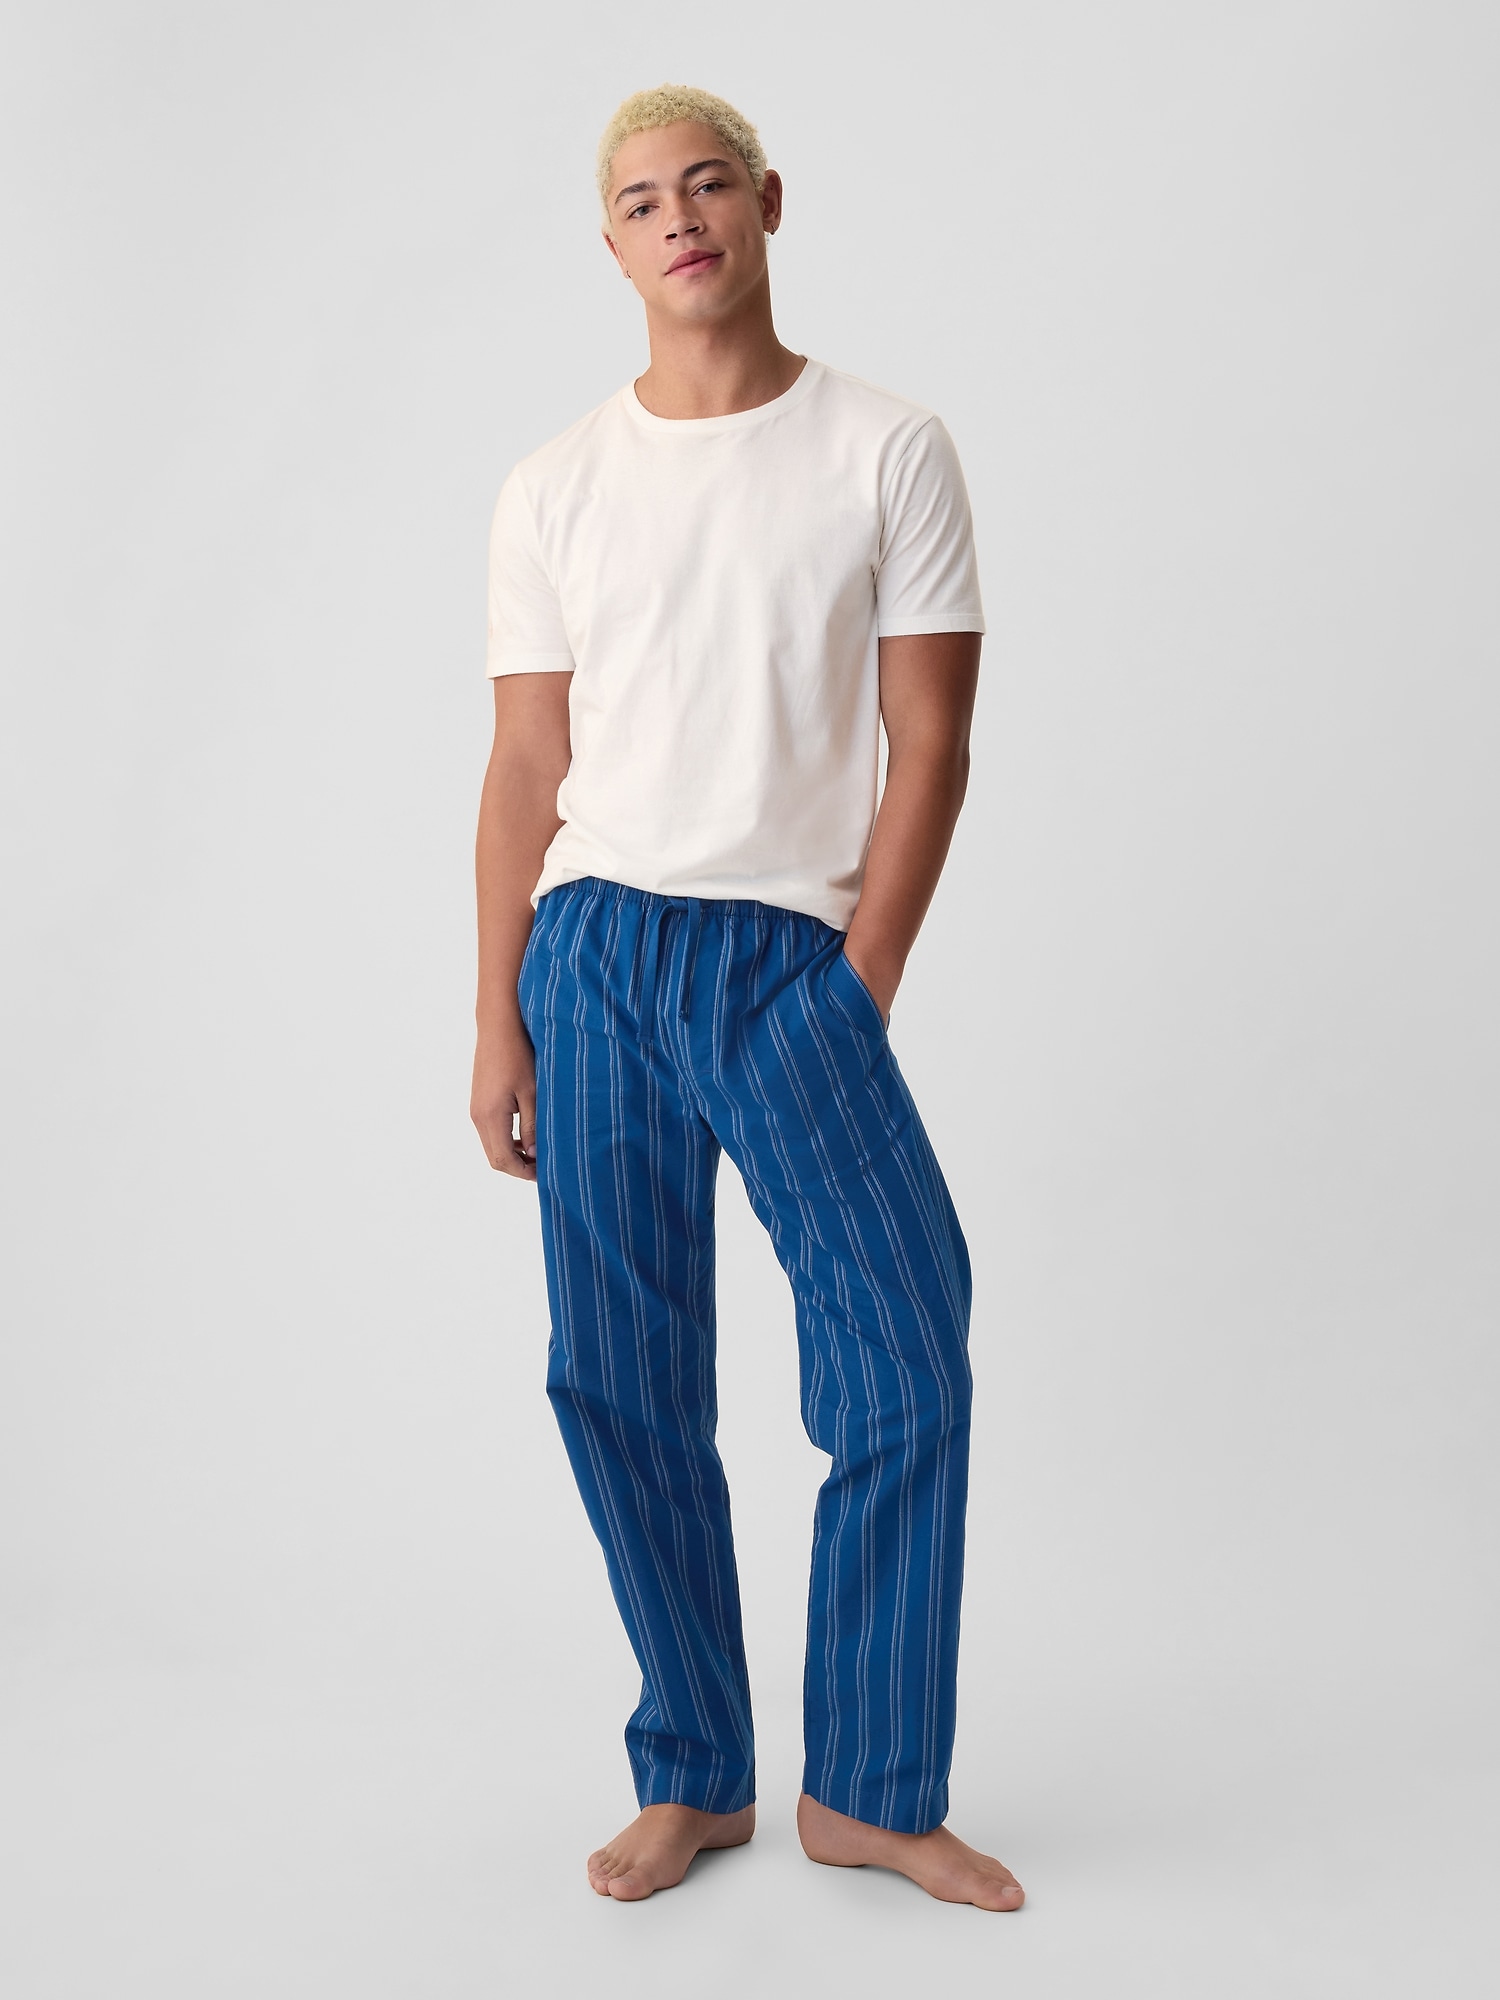 Gap Adult Pajama Pants In Summer Blue Stripe